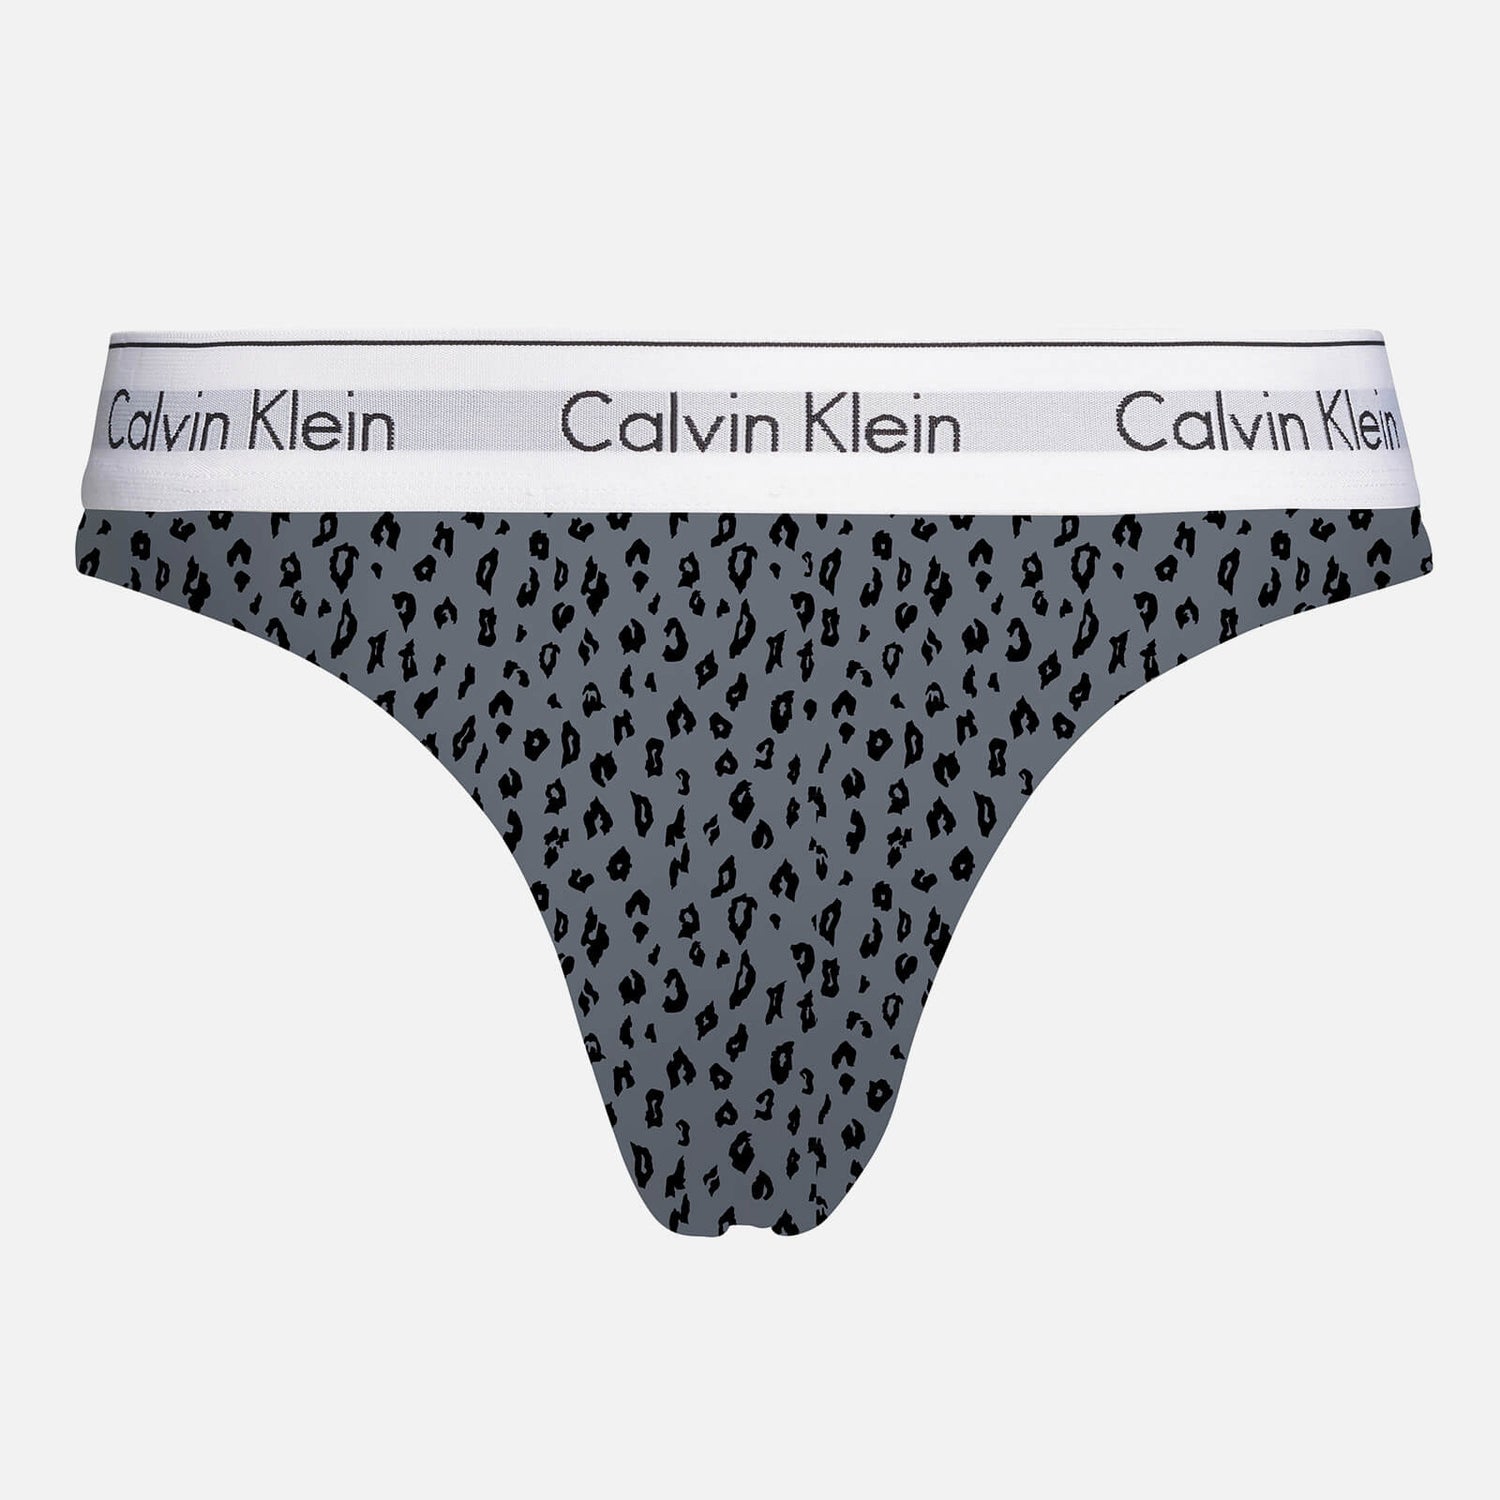 Calvin Klein Women's Cheetah Print Thong - Pewter